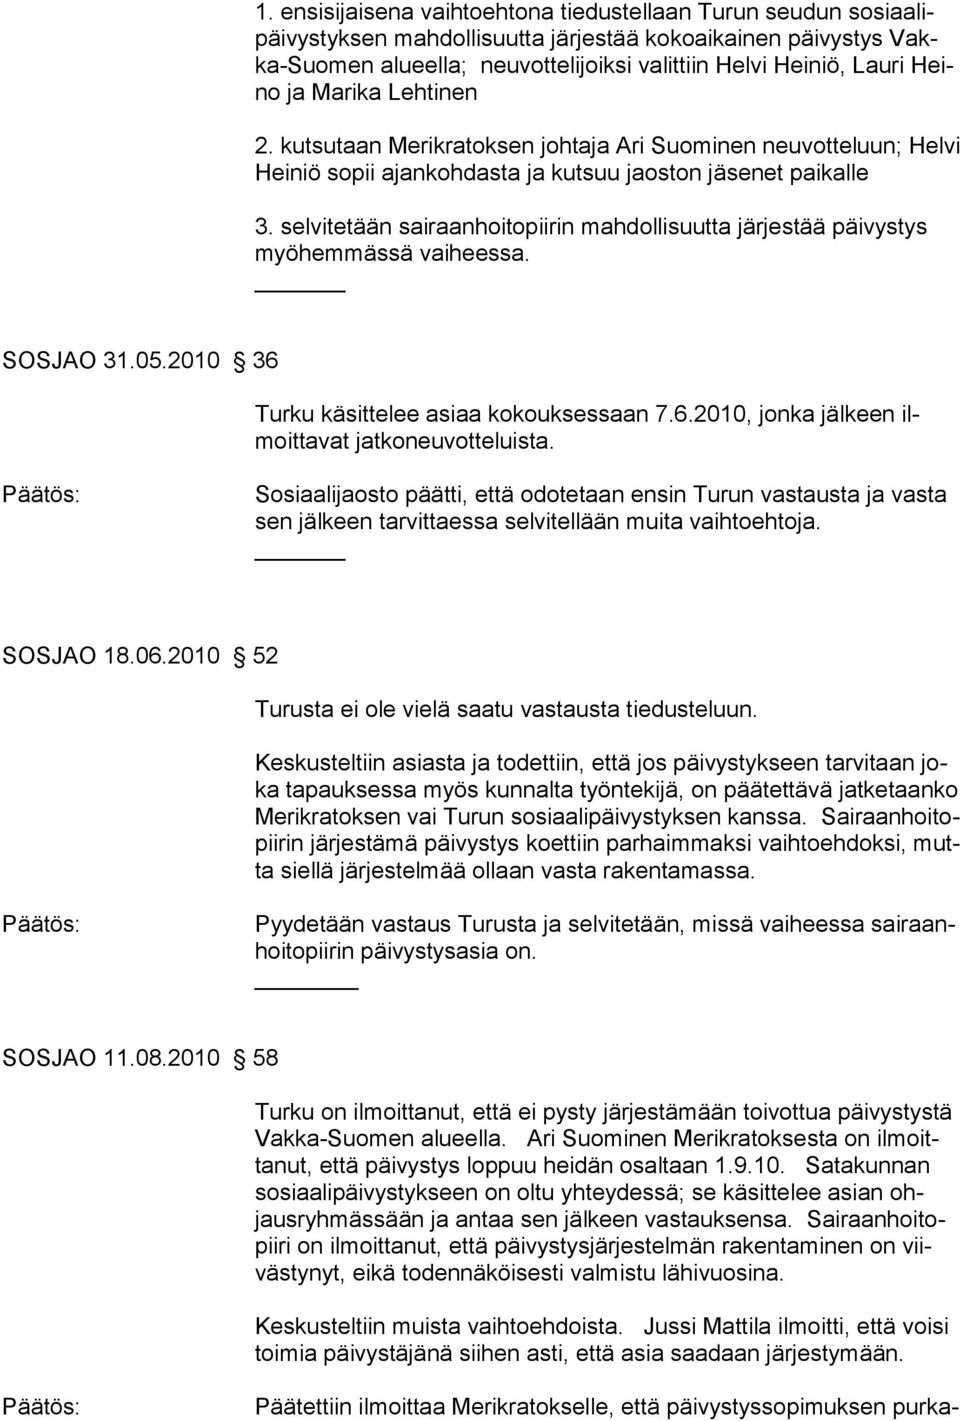 selvitetään sairaanhoitopiirin mahdollisuutta järjestää päivystys myöhemmässä vaiheessa. SOSJAO 31.05.2010 36 Turku käsittelee asiaa kokouksessaan 7.6.2010, jonka jälkeen ilmoittavat jatkoneuvotteluista.